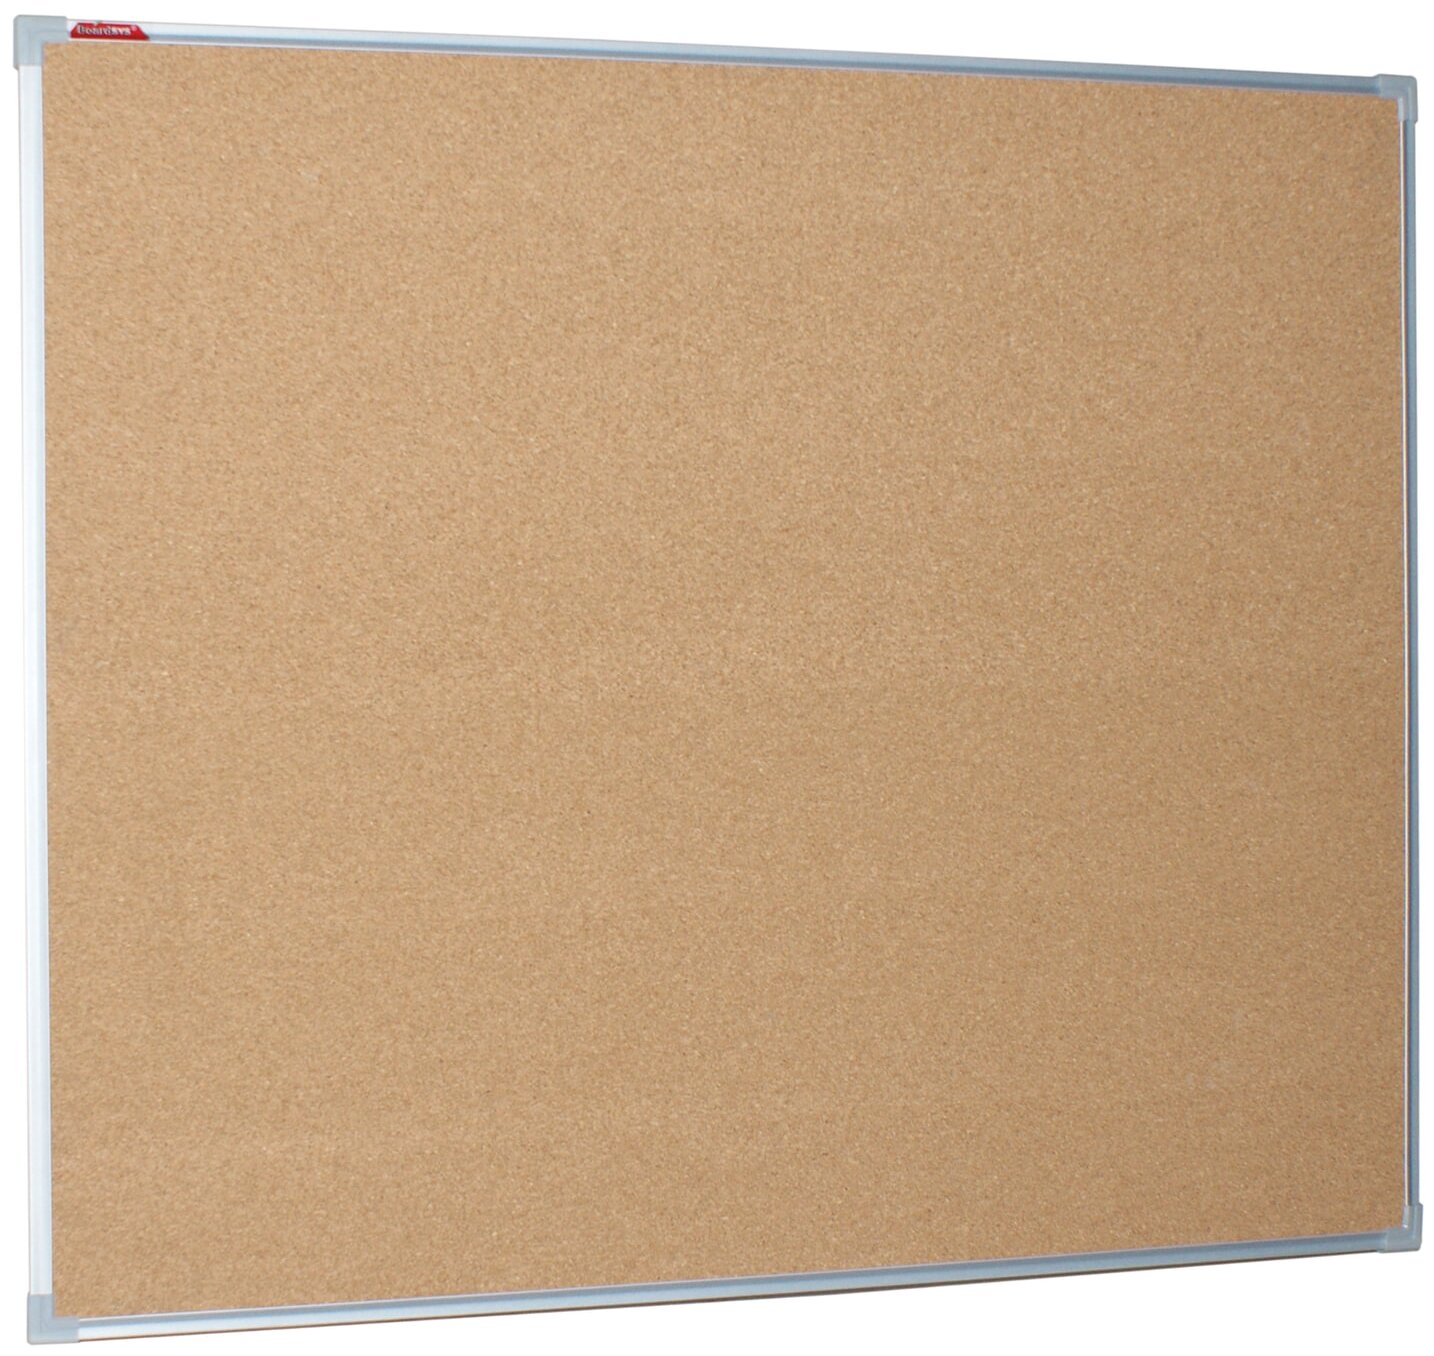 Демонстрационные доски  E2E4 Демонстрационная доска BoardSYS пробковая, 100х120см, пробка (коричневый)/алюминий (серый) (П*120)